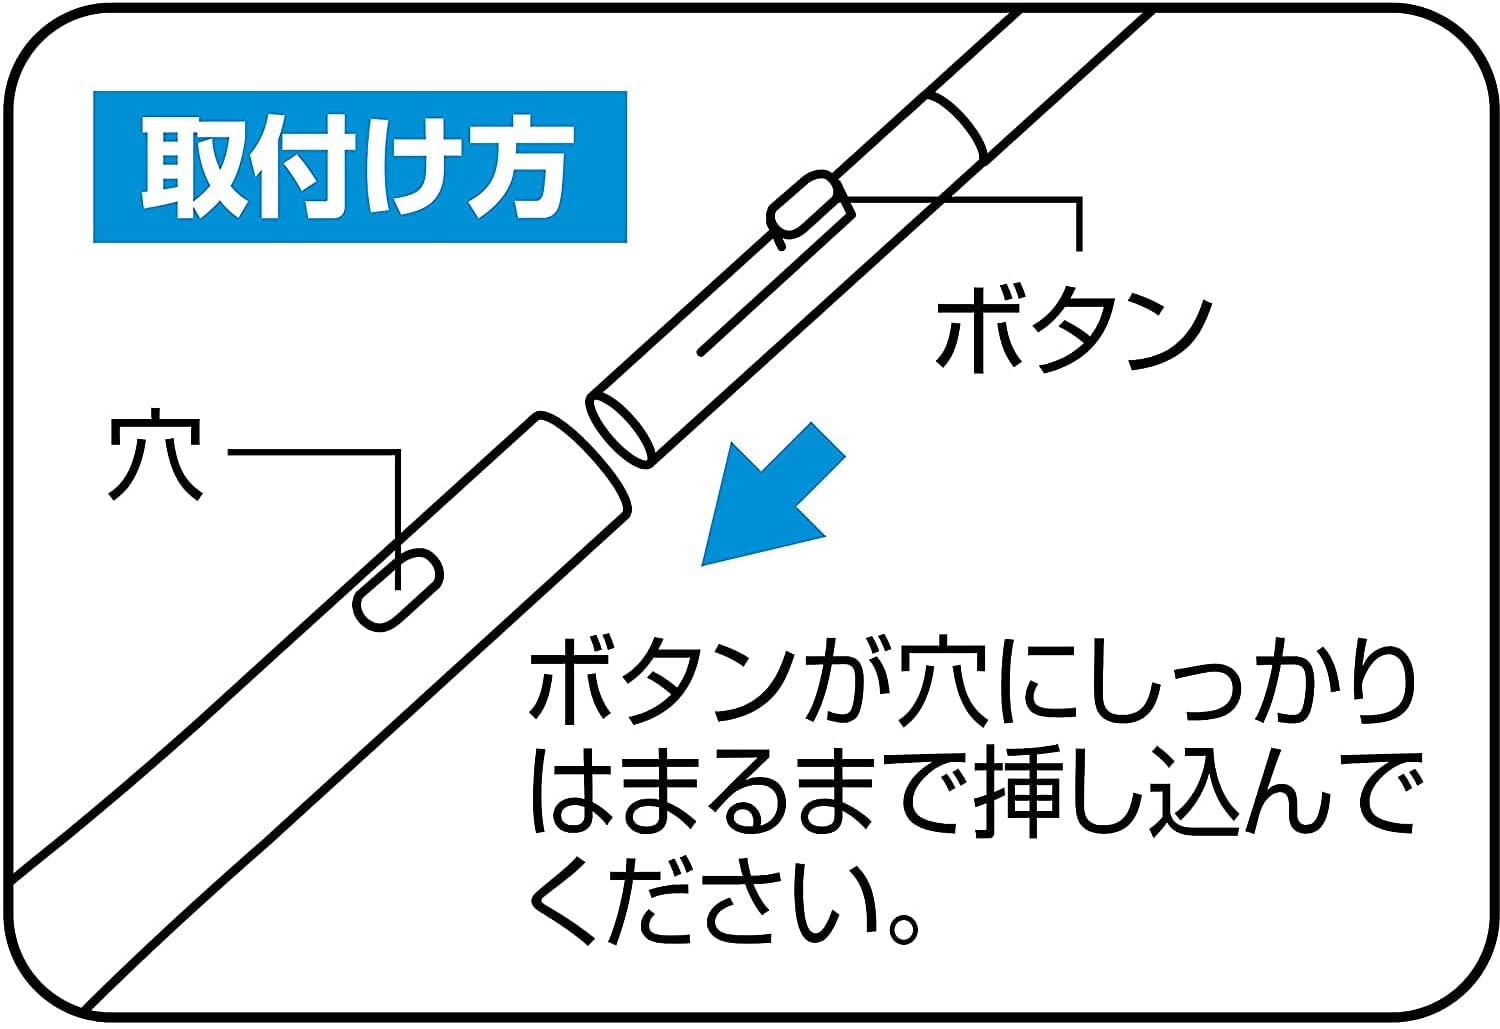 Combo Dụng cụ lau kính cán dài nội địa Nhật Bản